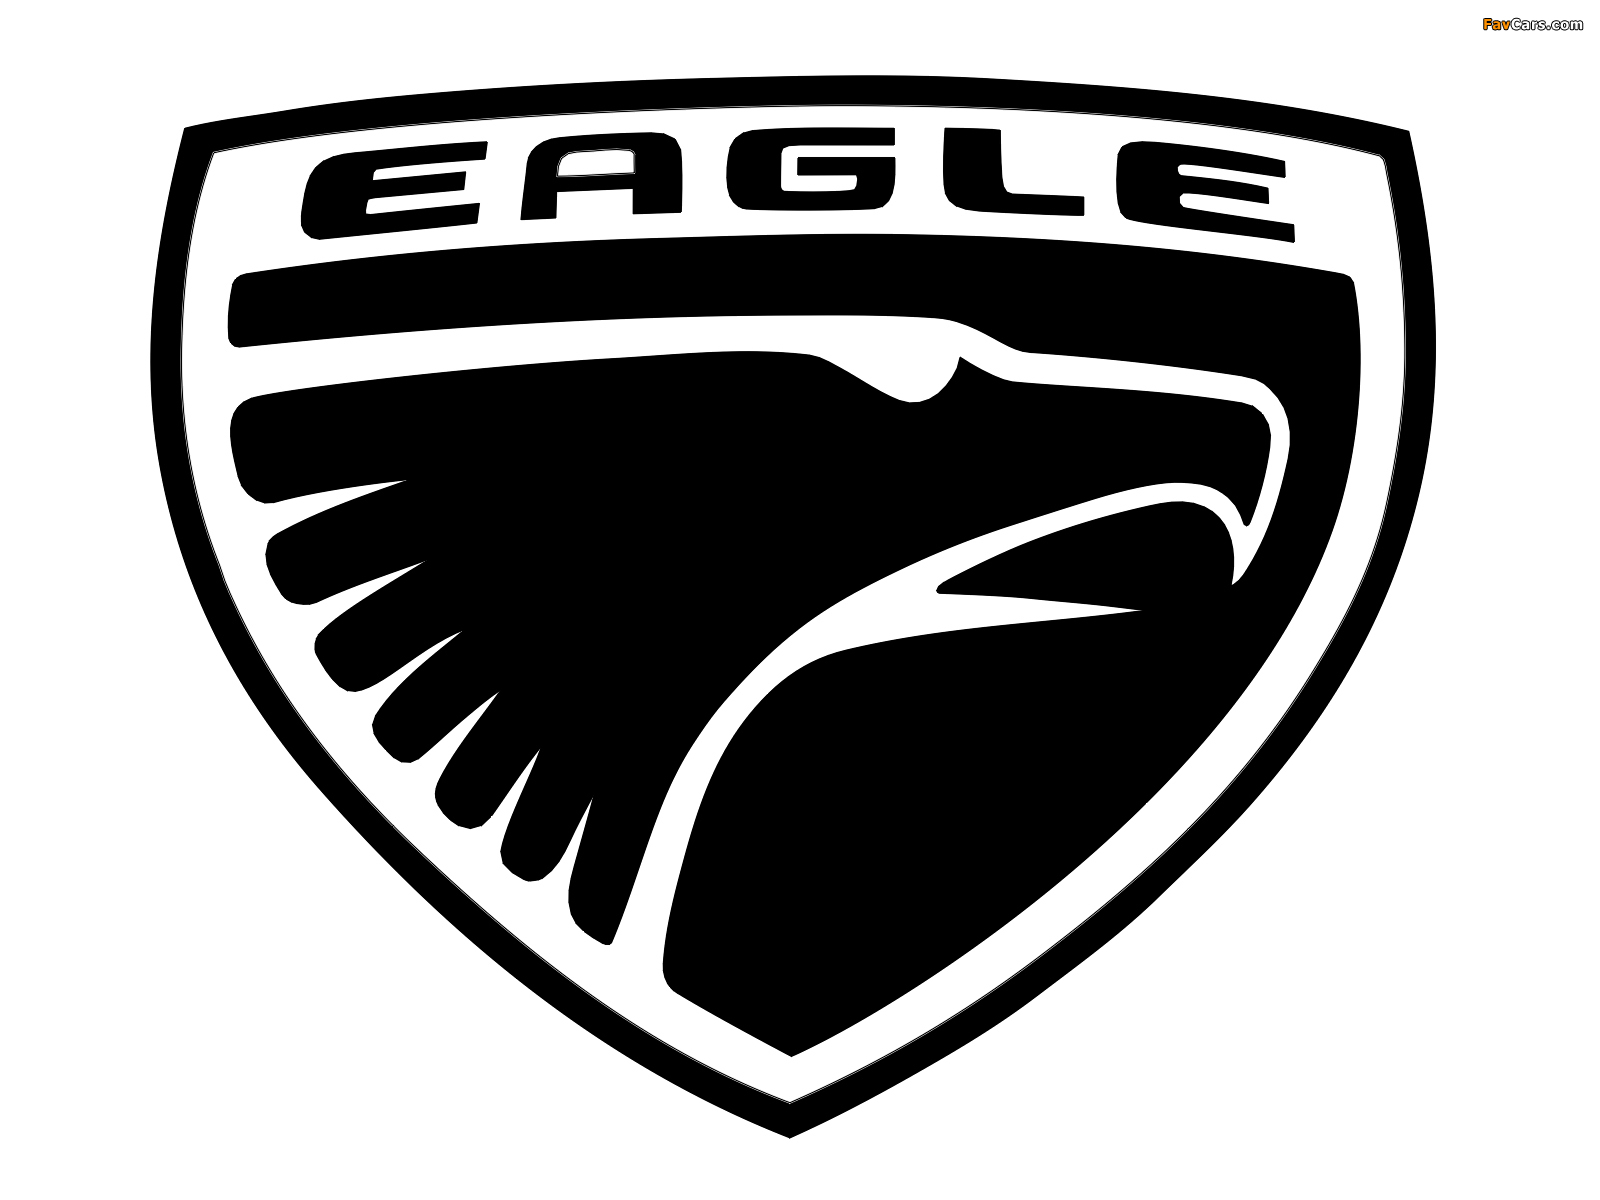 Eagle photos (1600 x 1200)